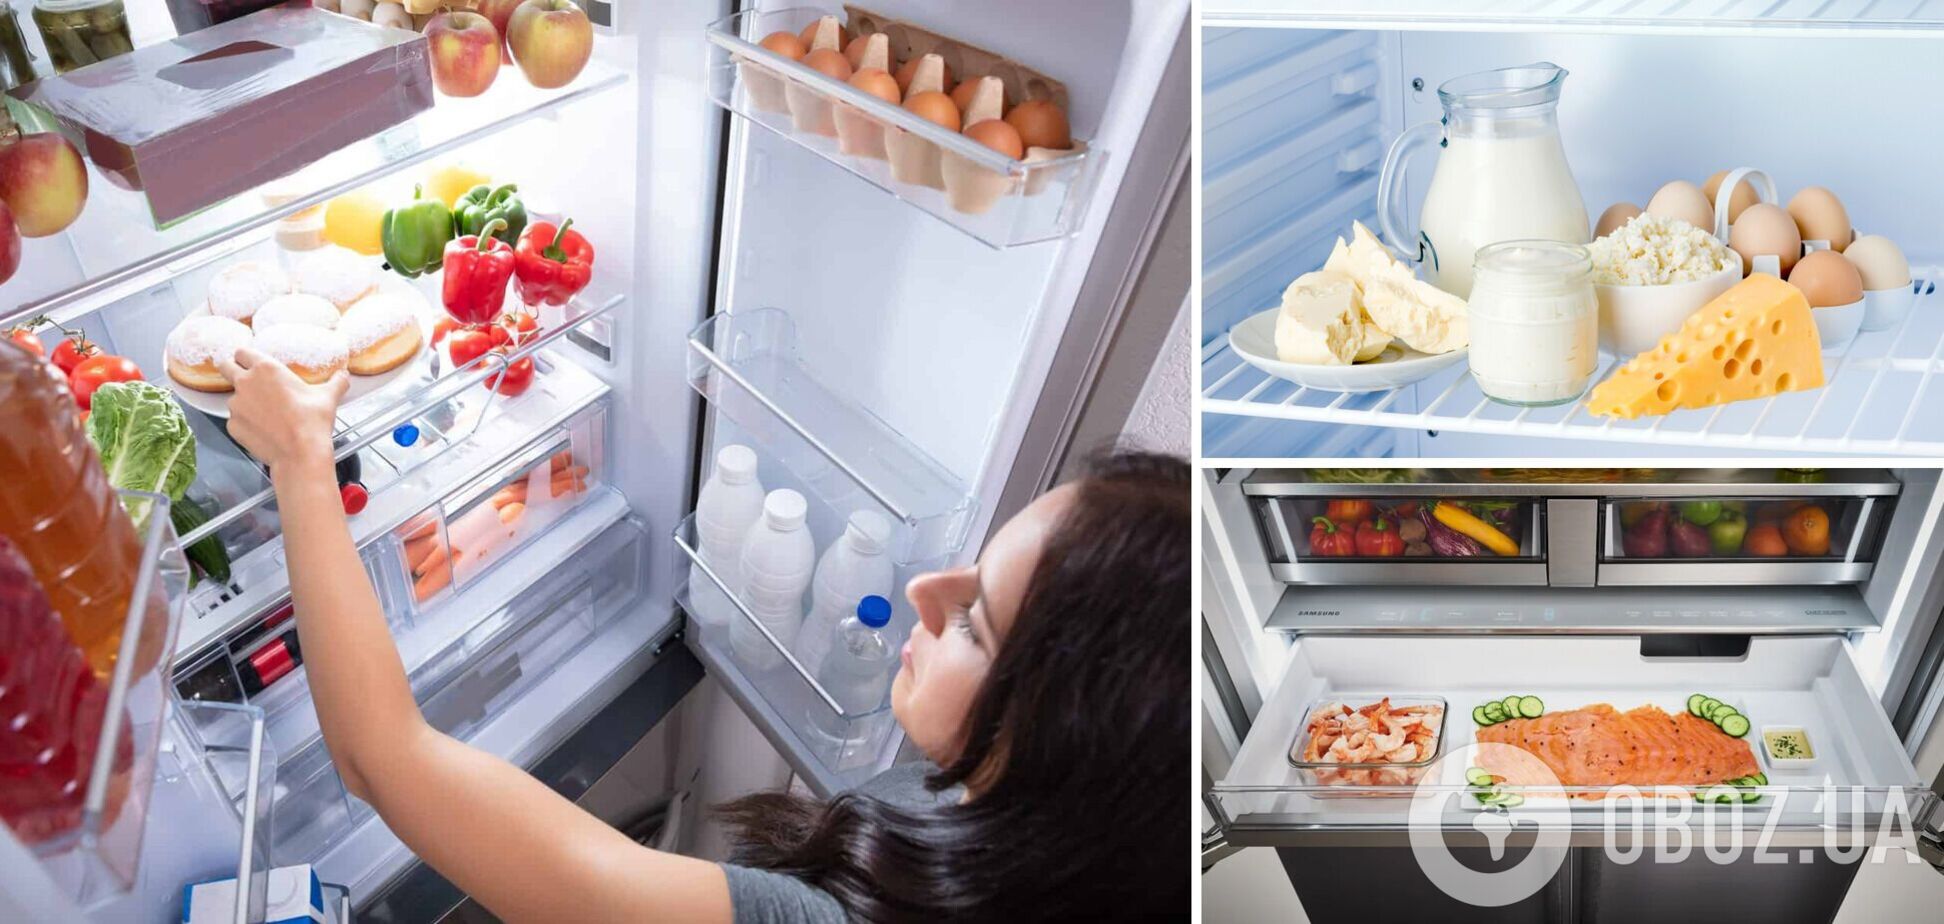 Как хранить продукты в холодильнике, чтобы они дольше были свежими даже без света